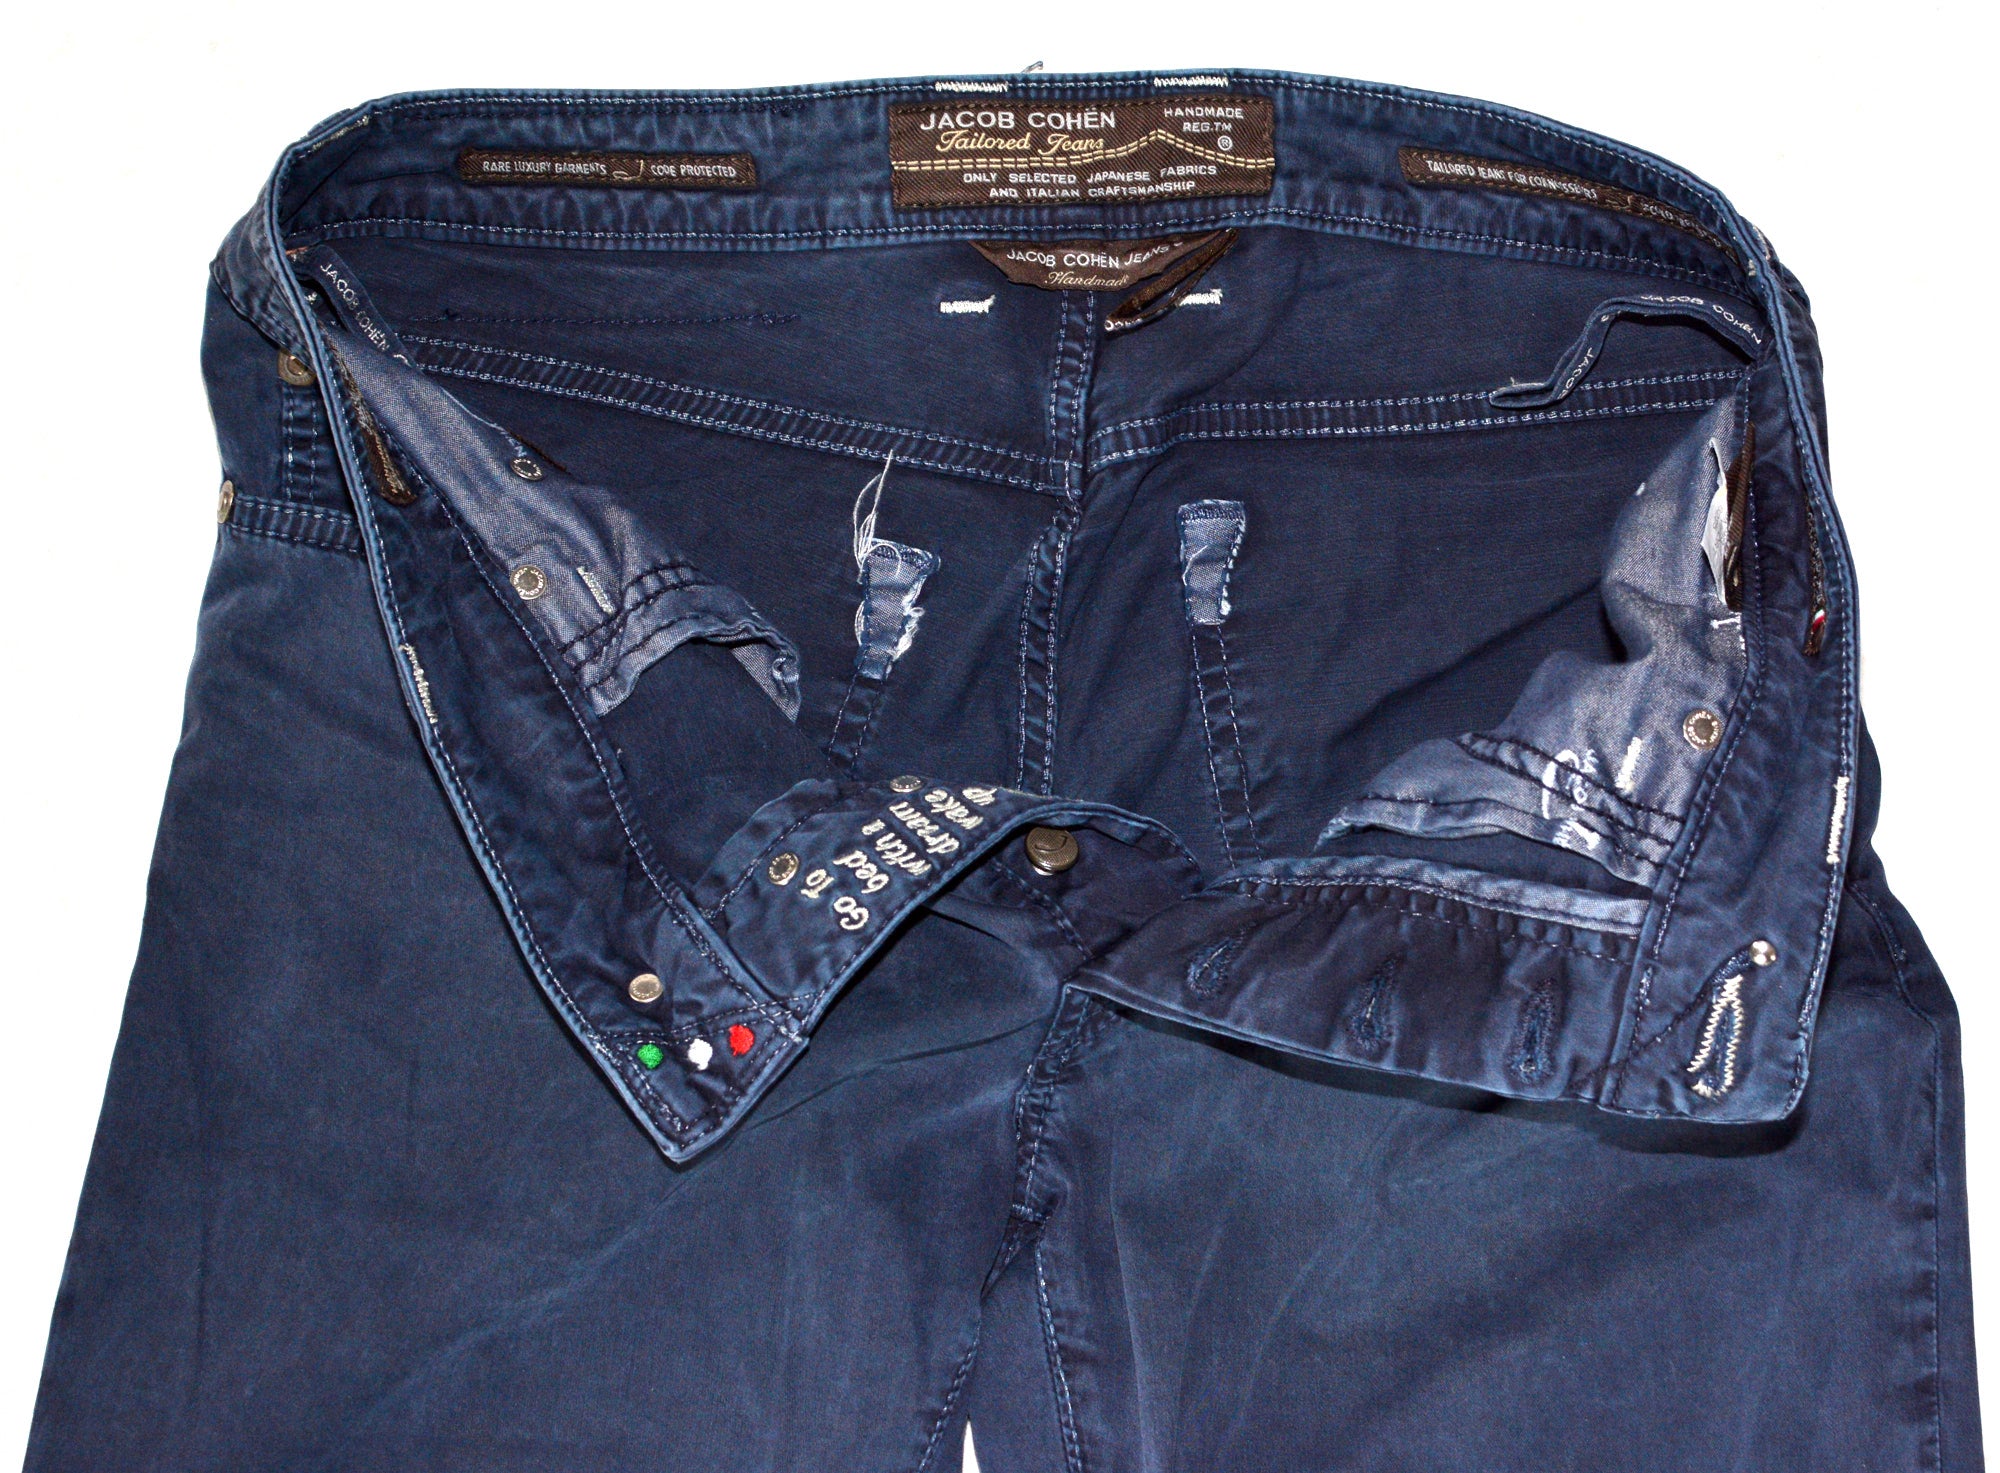 JACOB COHEN J688 Comfort Vintage Blue Cotton Stretch Slim Fit Jeans Pants US 33 JACOB COHEN